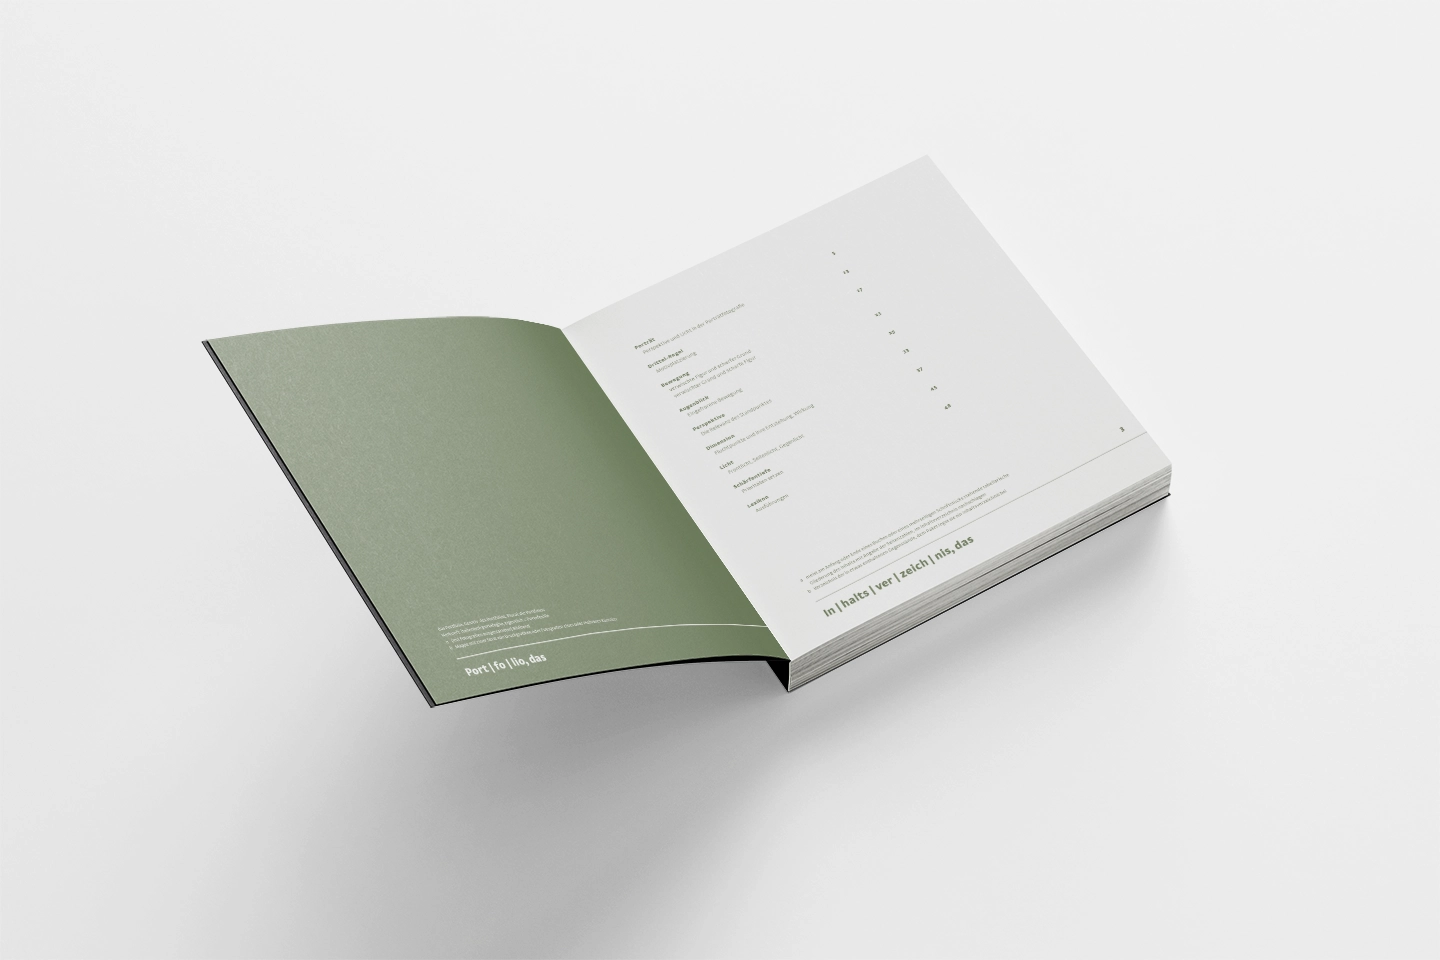 Aufgeschlagenes Buch mit Inhaltsverzeichnis auf weißem Hintergrund, zeigt minimalistische Buchgestaltung.